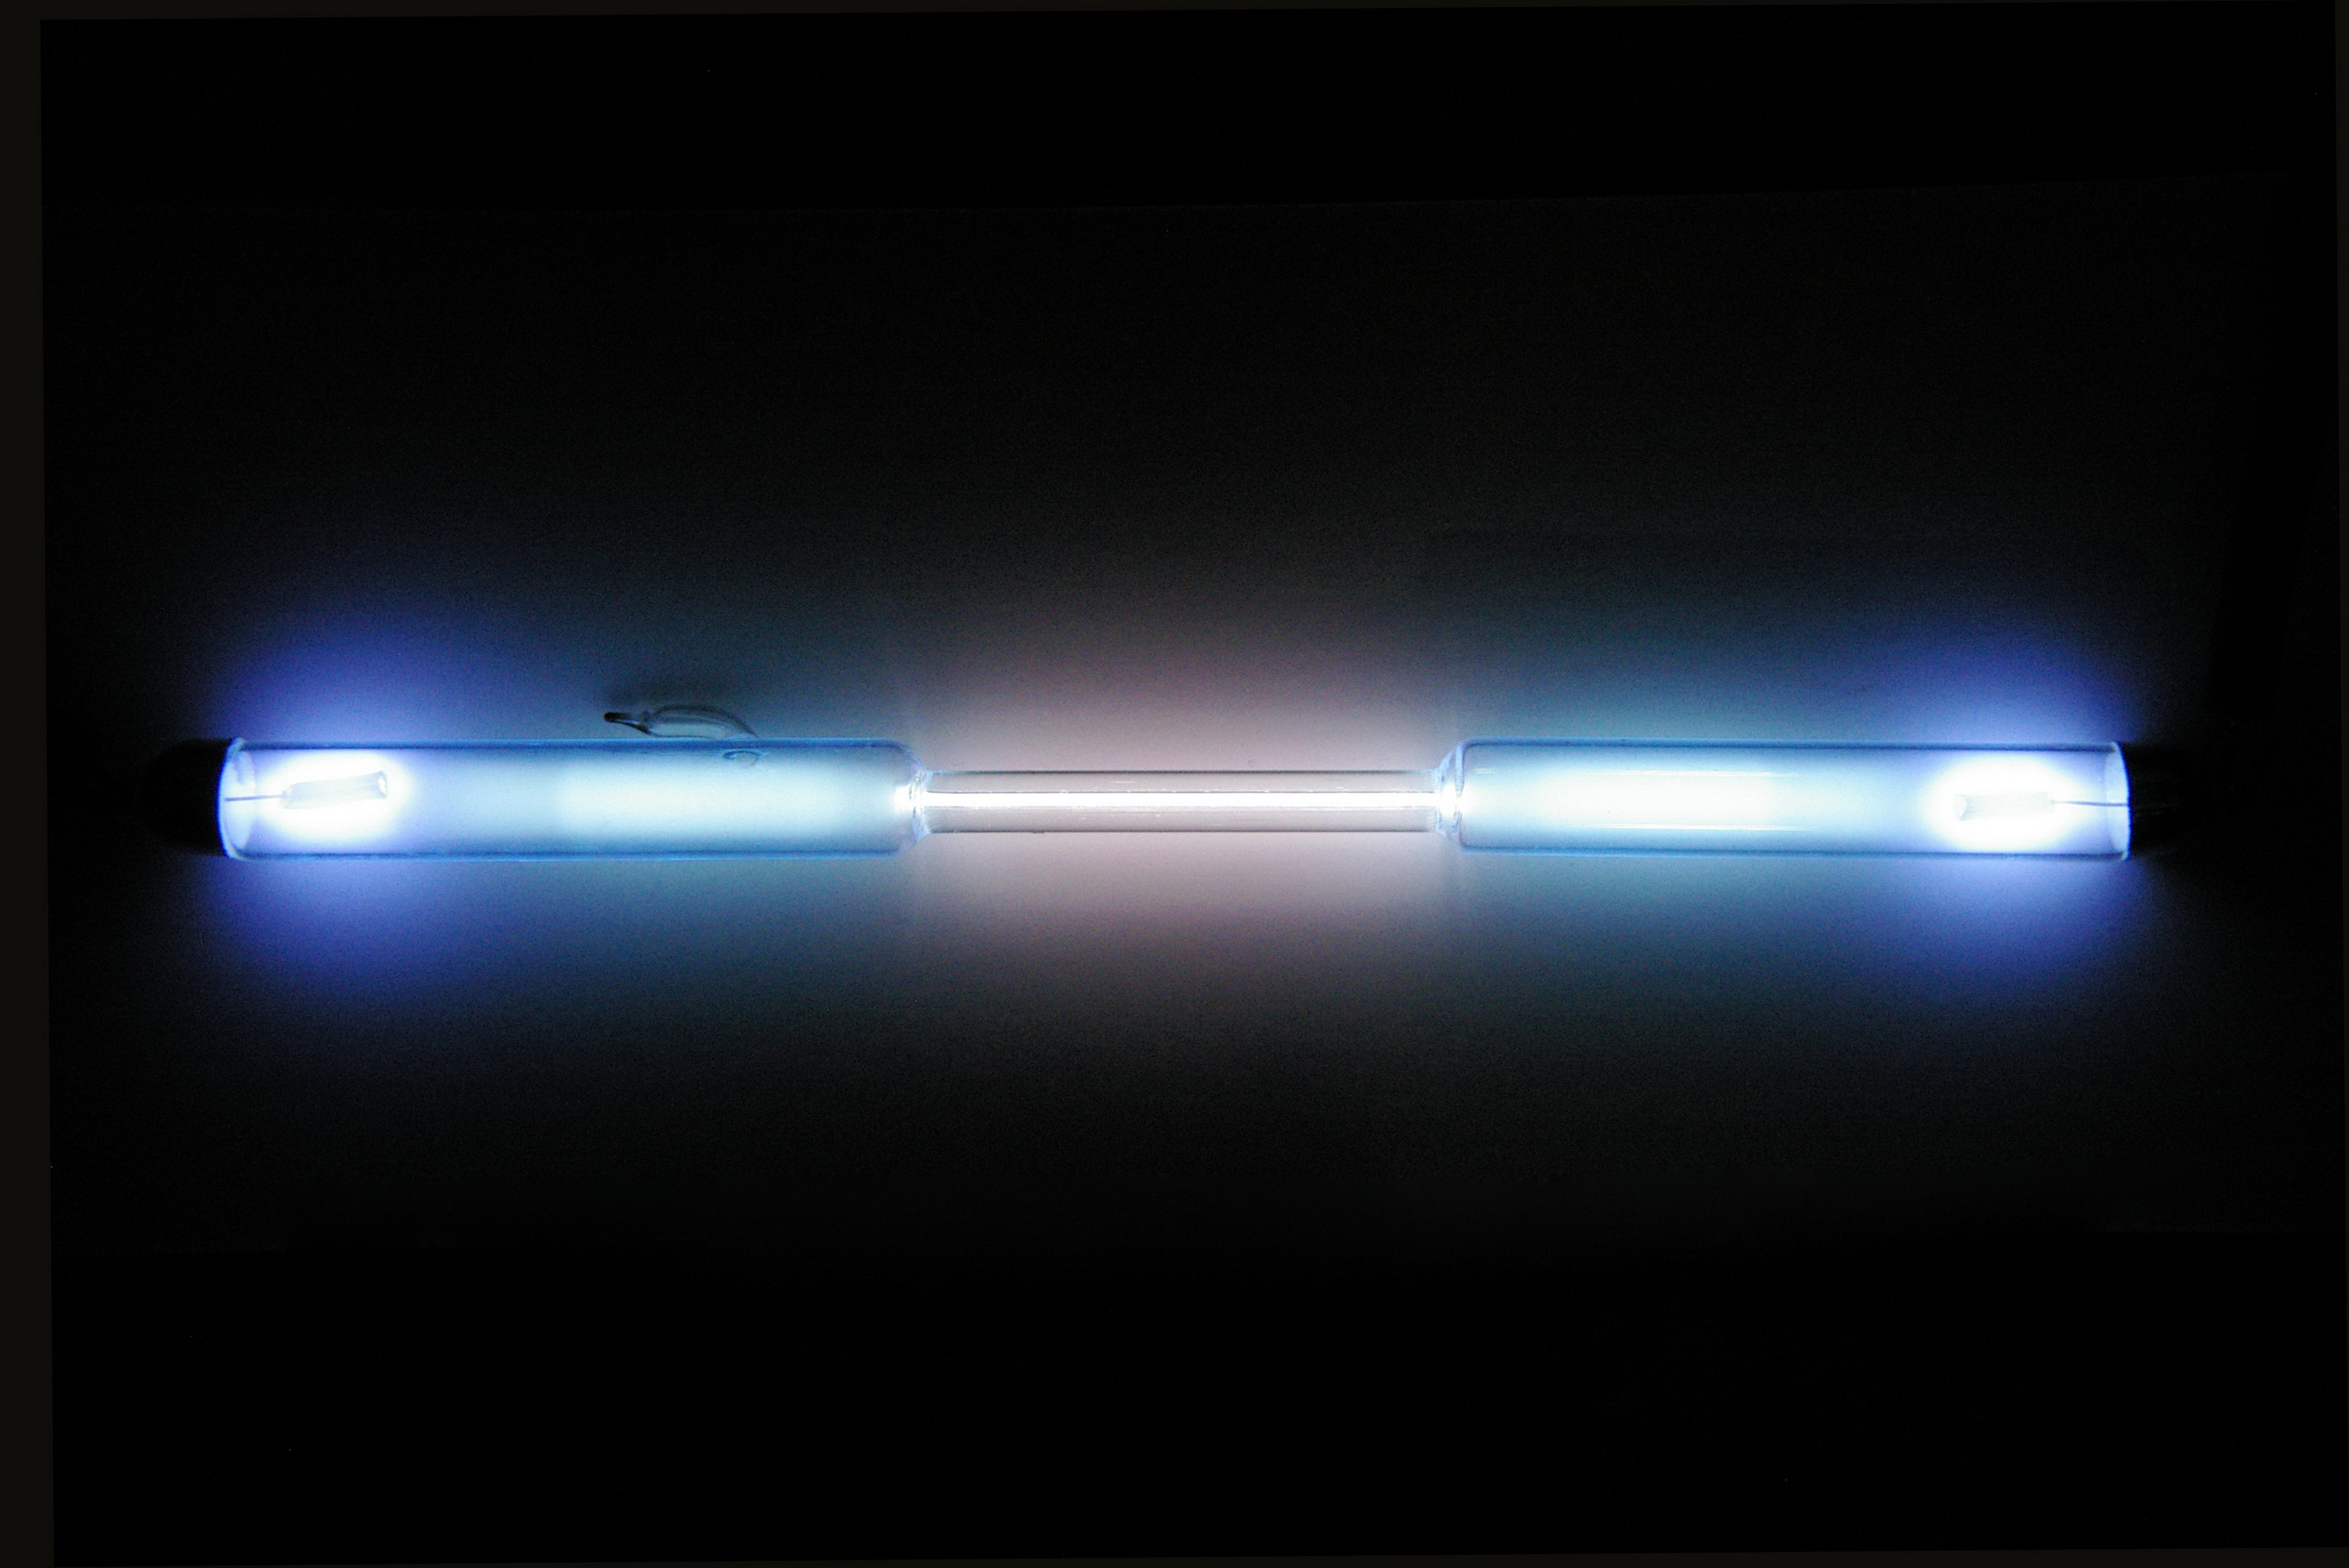 Le krypton est un gaz totalement incolore à température ambiante. Il est utilisé dans certaines lampes. © Alchemist-hp, Wikimedia Commons, CC by-nc-nd 3.0